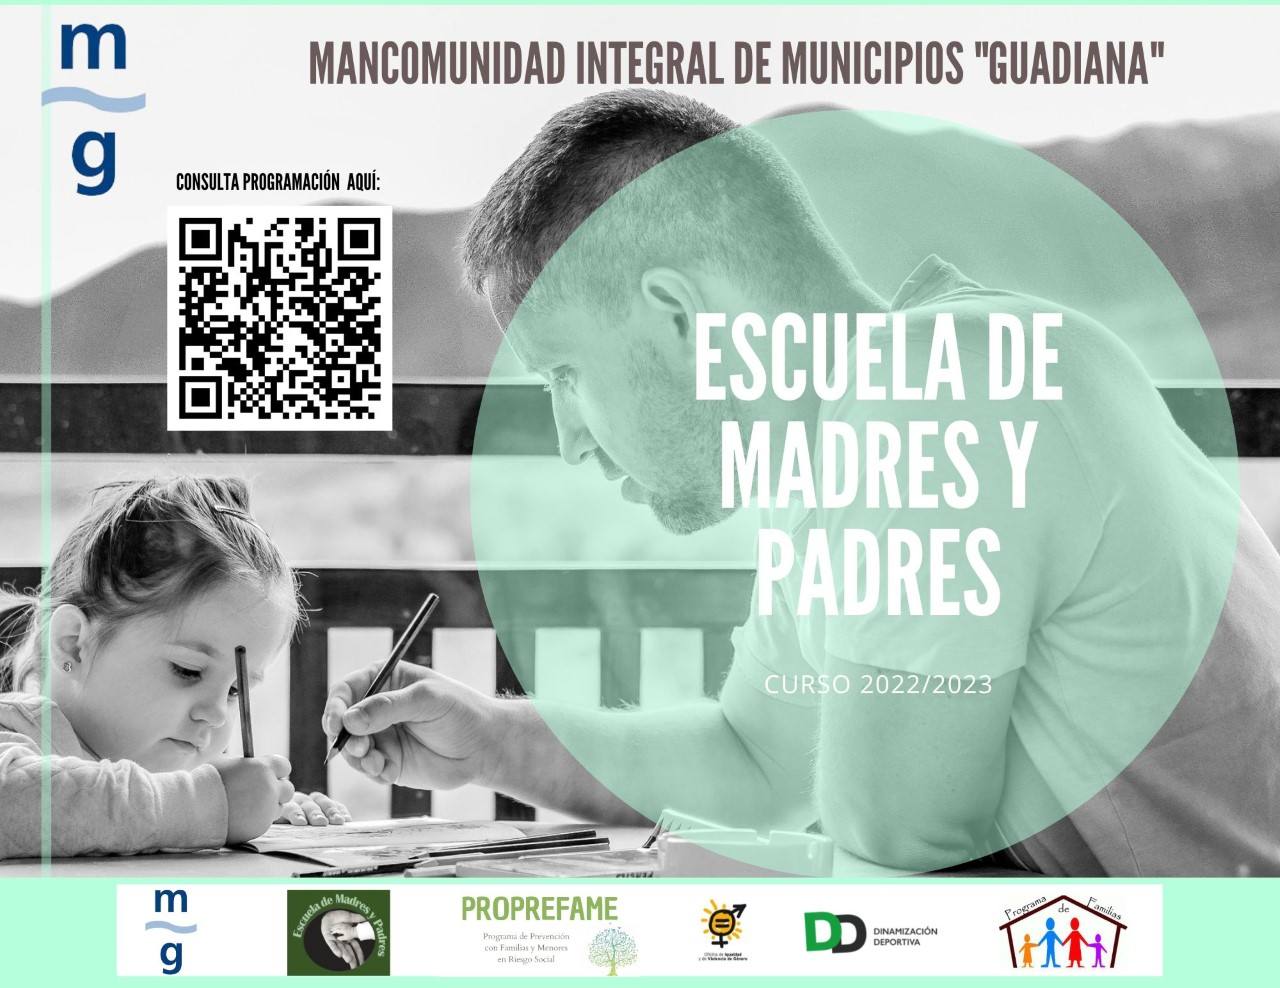 La Mancomunidad Guadiana inicia la Escuela de Madres y Padres del curso 2022/2023